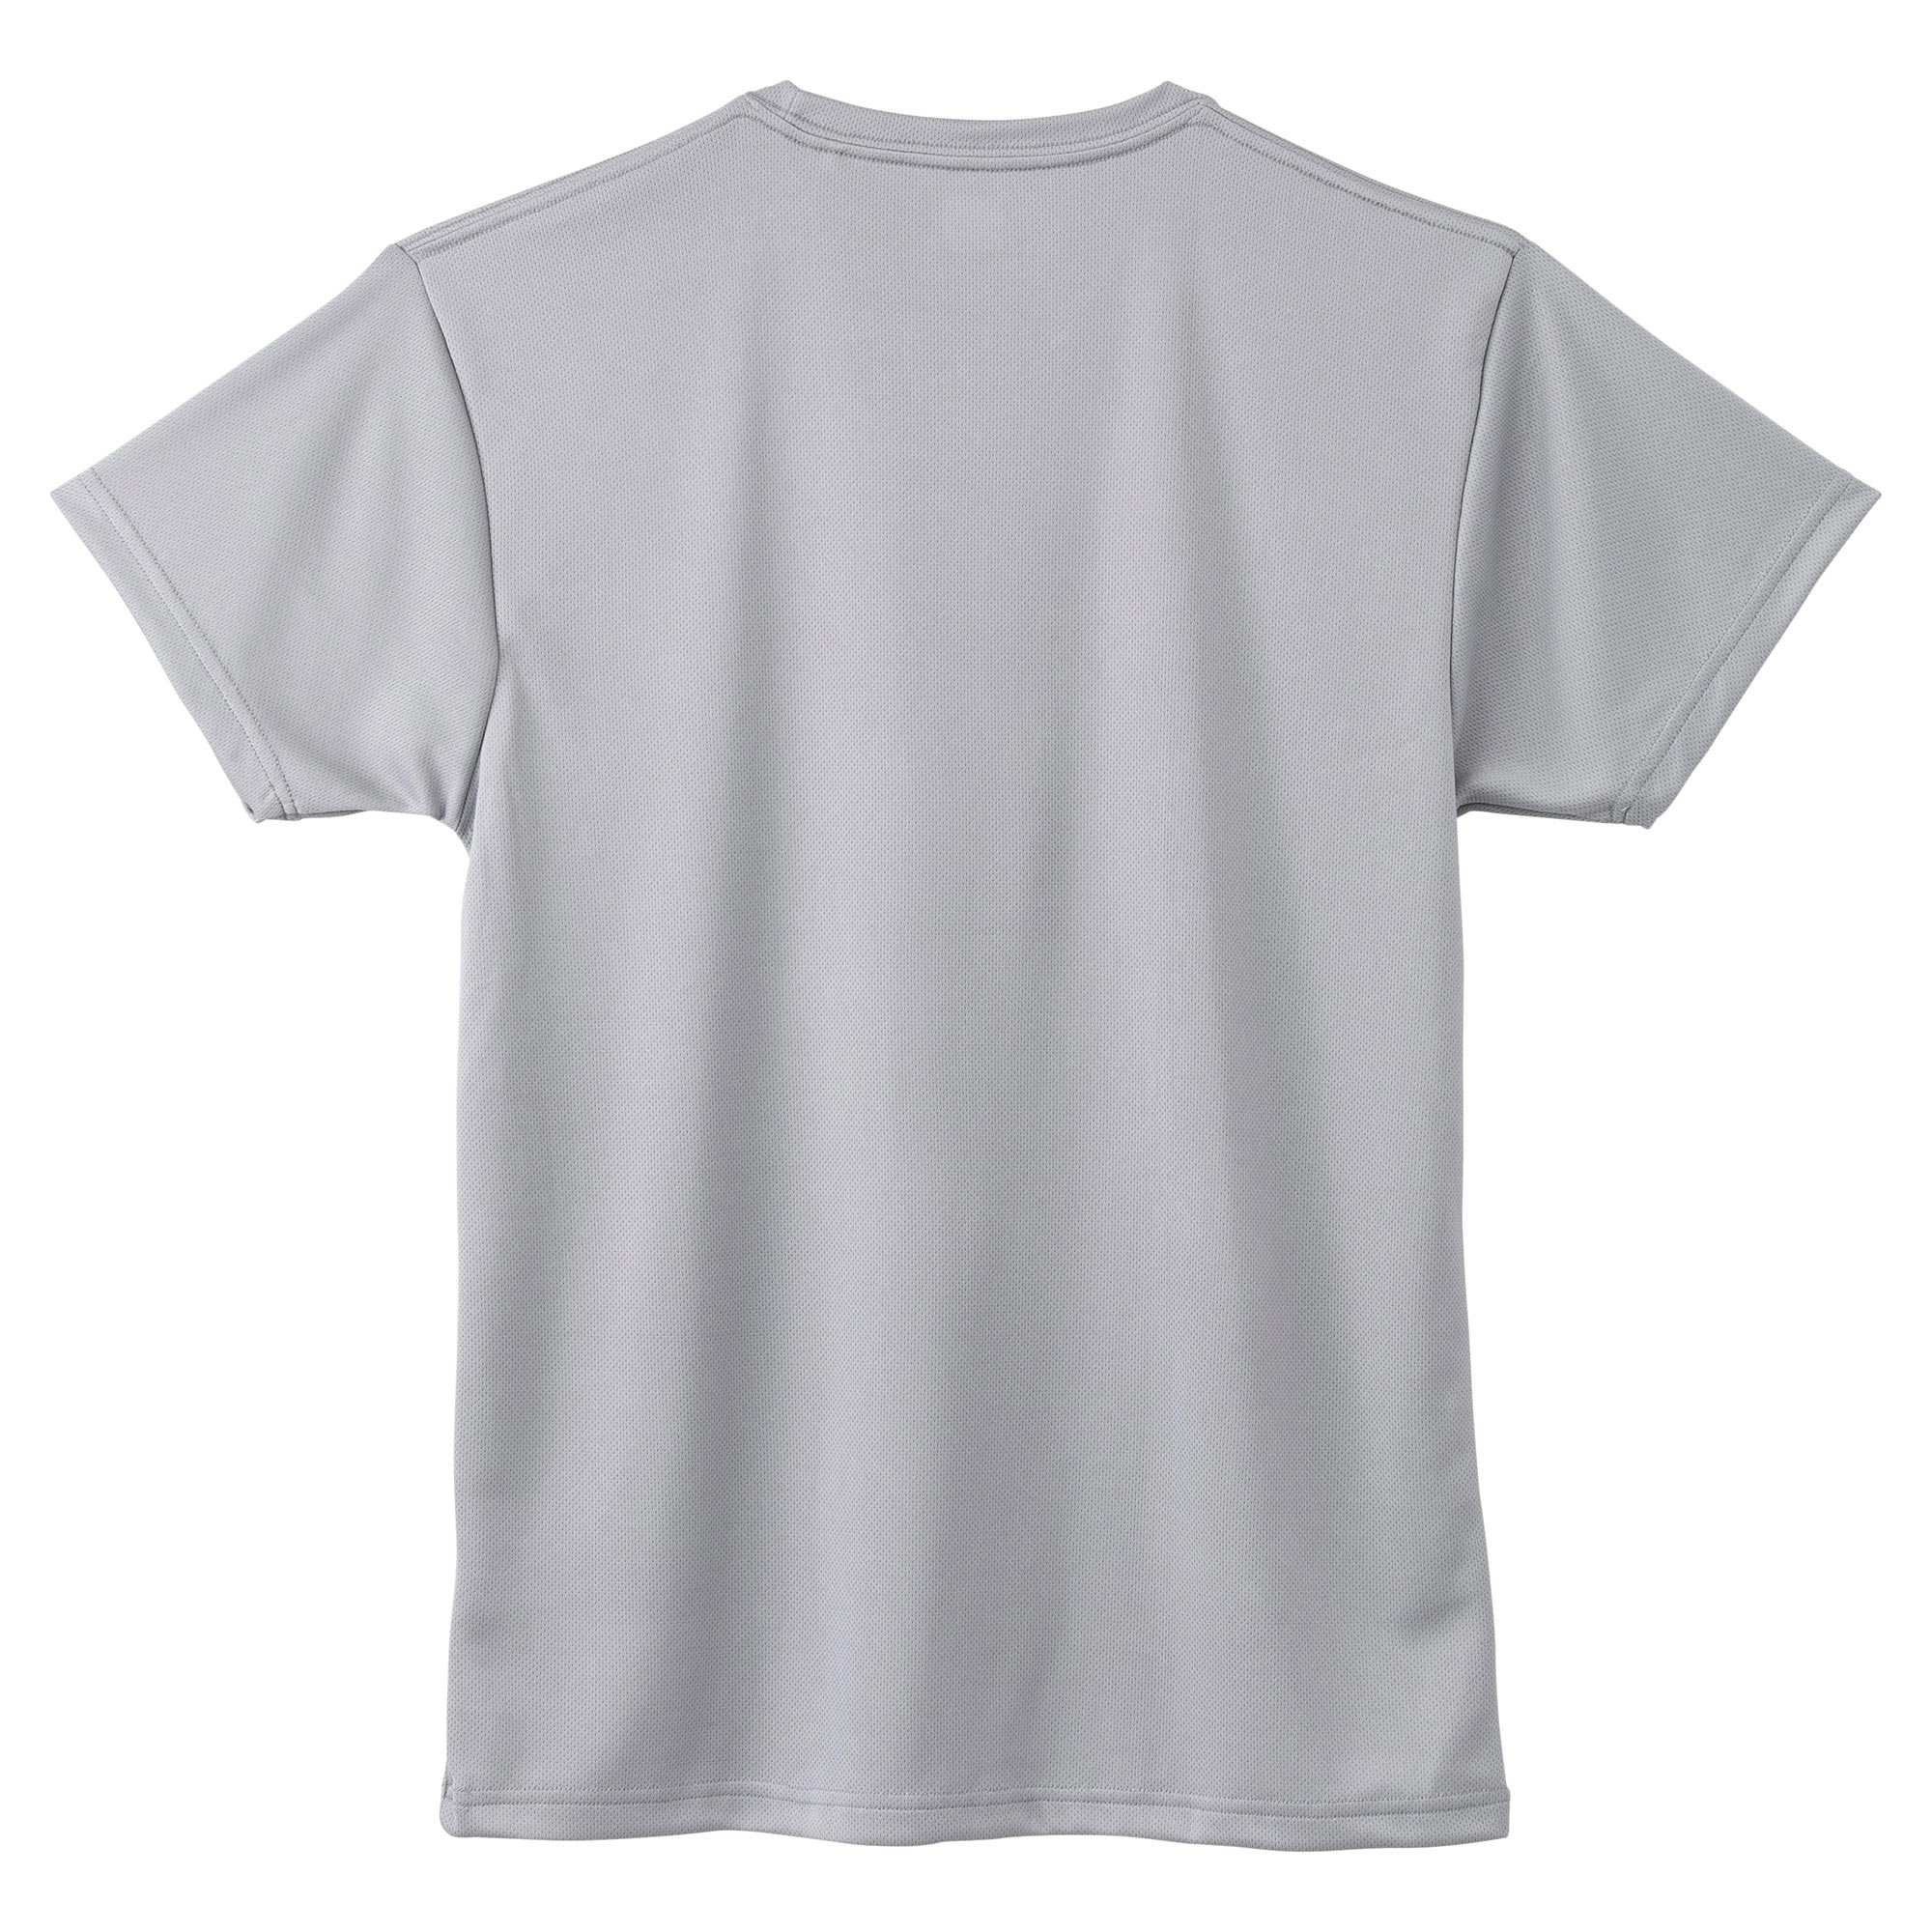 クルーネック半袖インナーシャツ[メンズ]|C2JA1173|アンダーウエア 